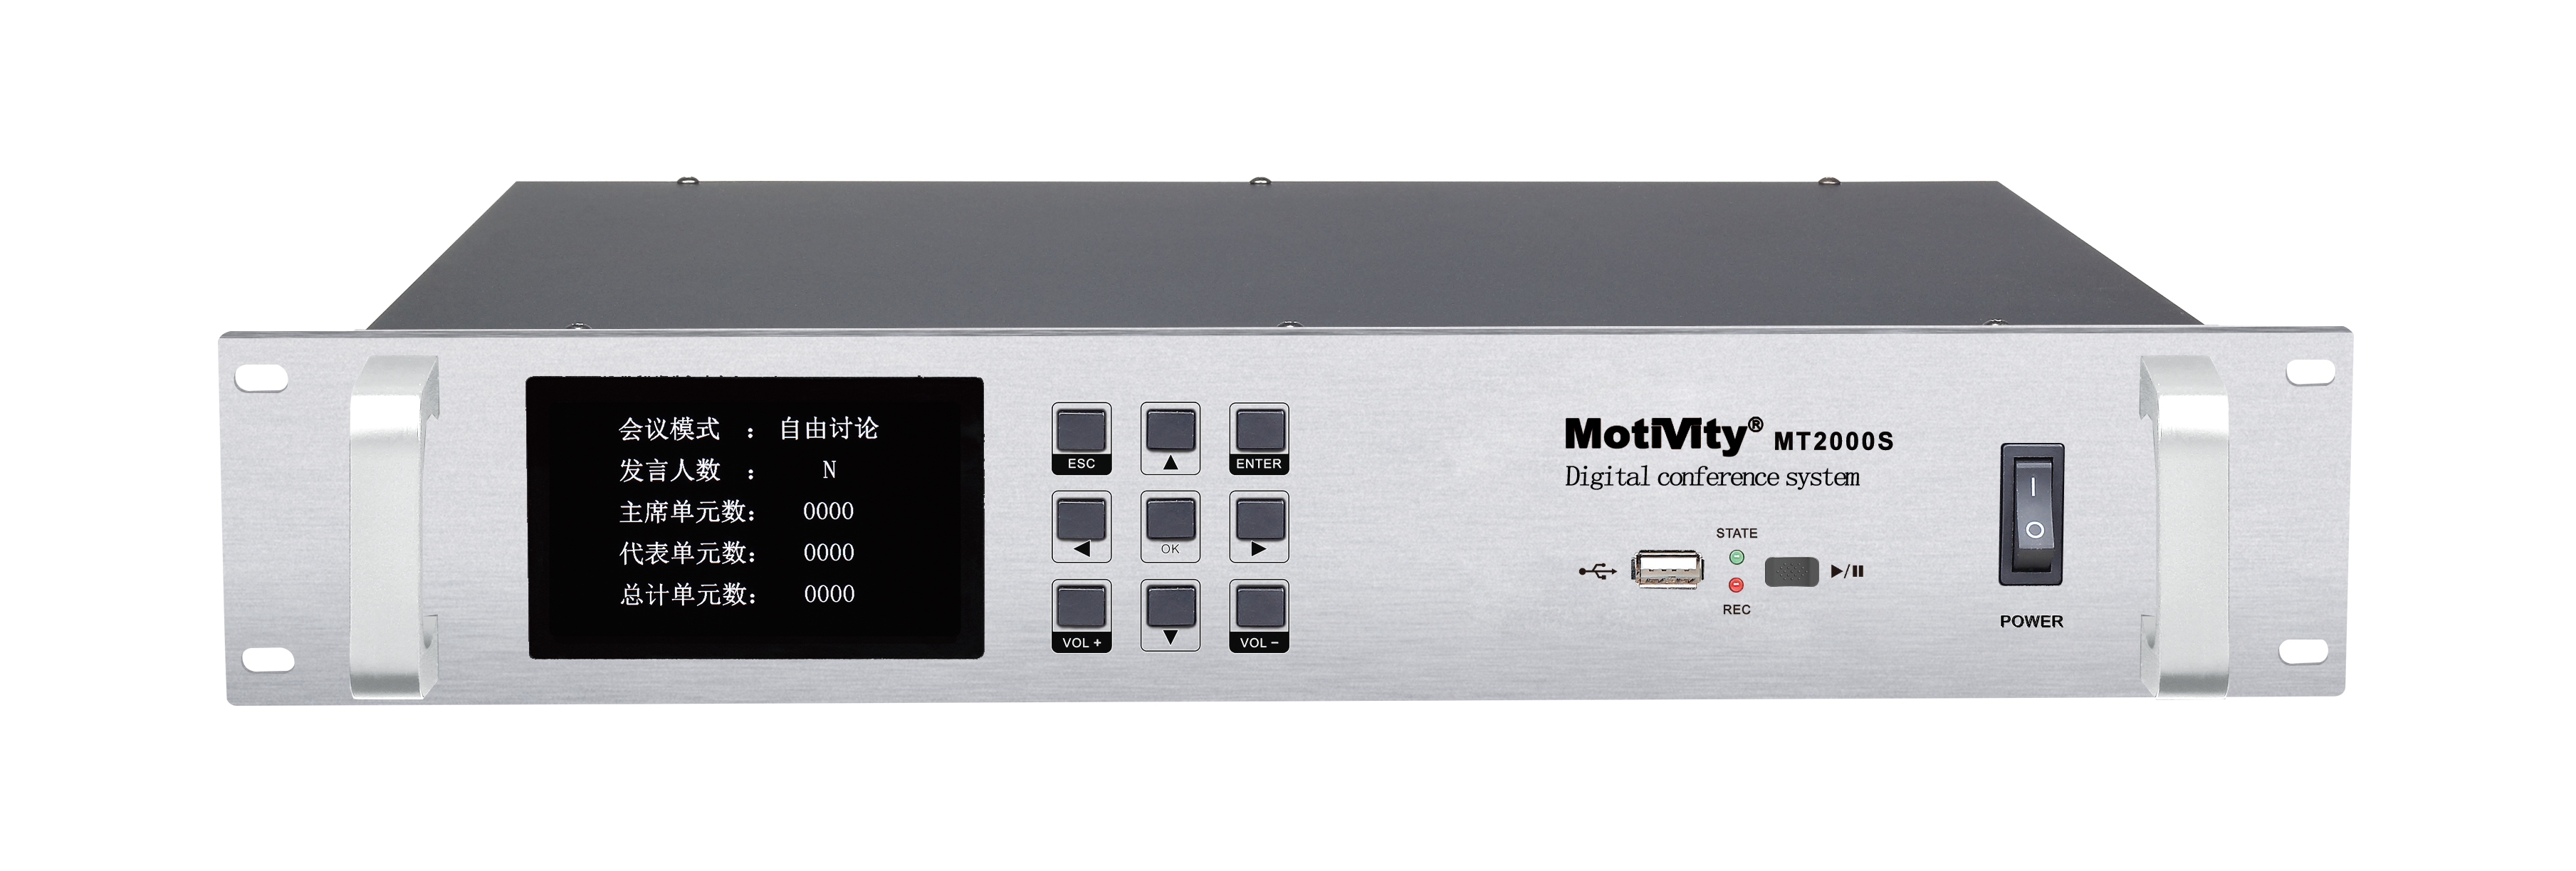 中国MOTIVITY MT2000S系统主机 适用于政府 企业 酒店 教育等领域产品图片